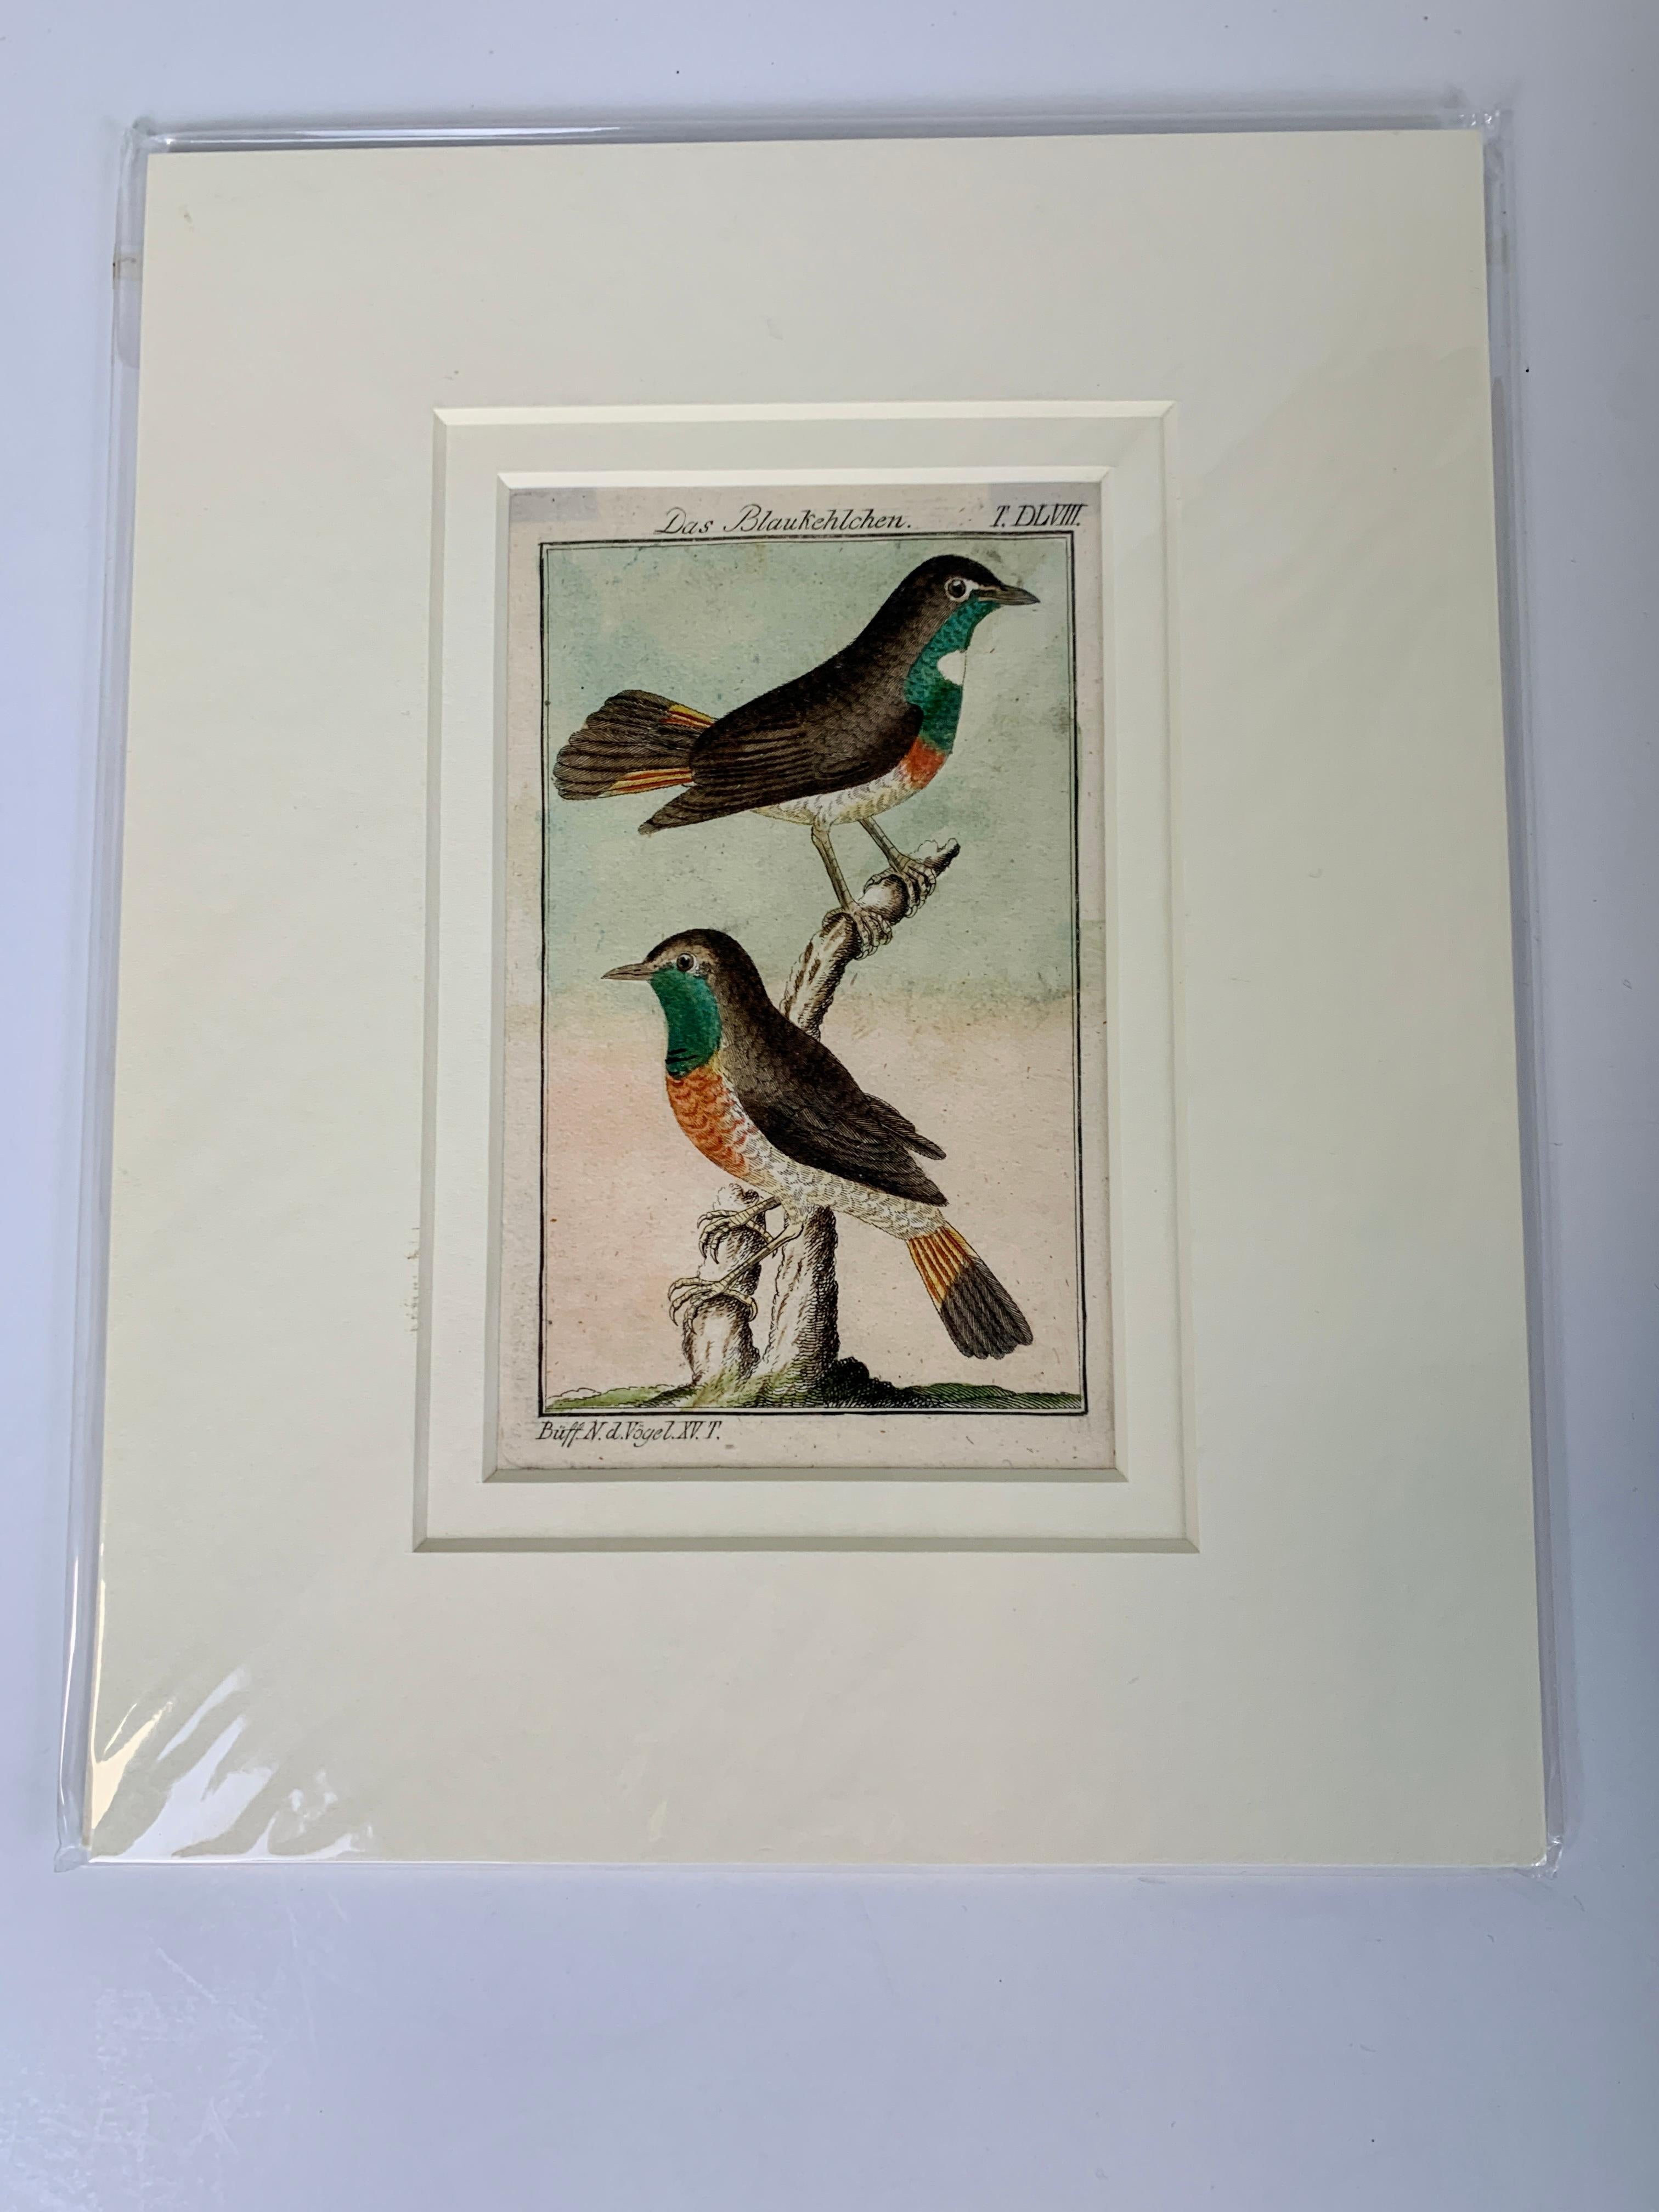 Gravures d'oiseaux françaises colorées à la main 18e siècle par Francois-Nicolas Martinet 3